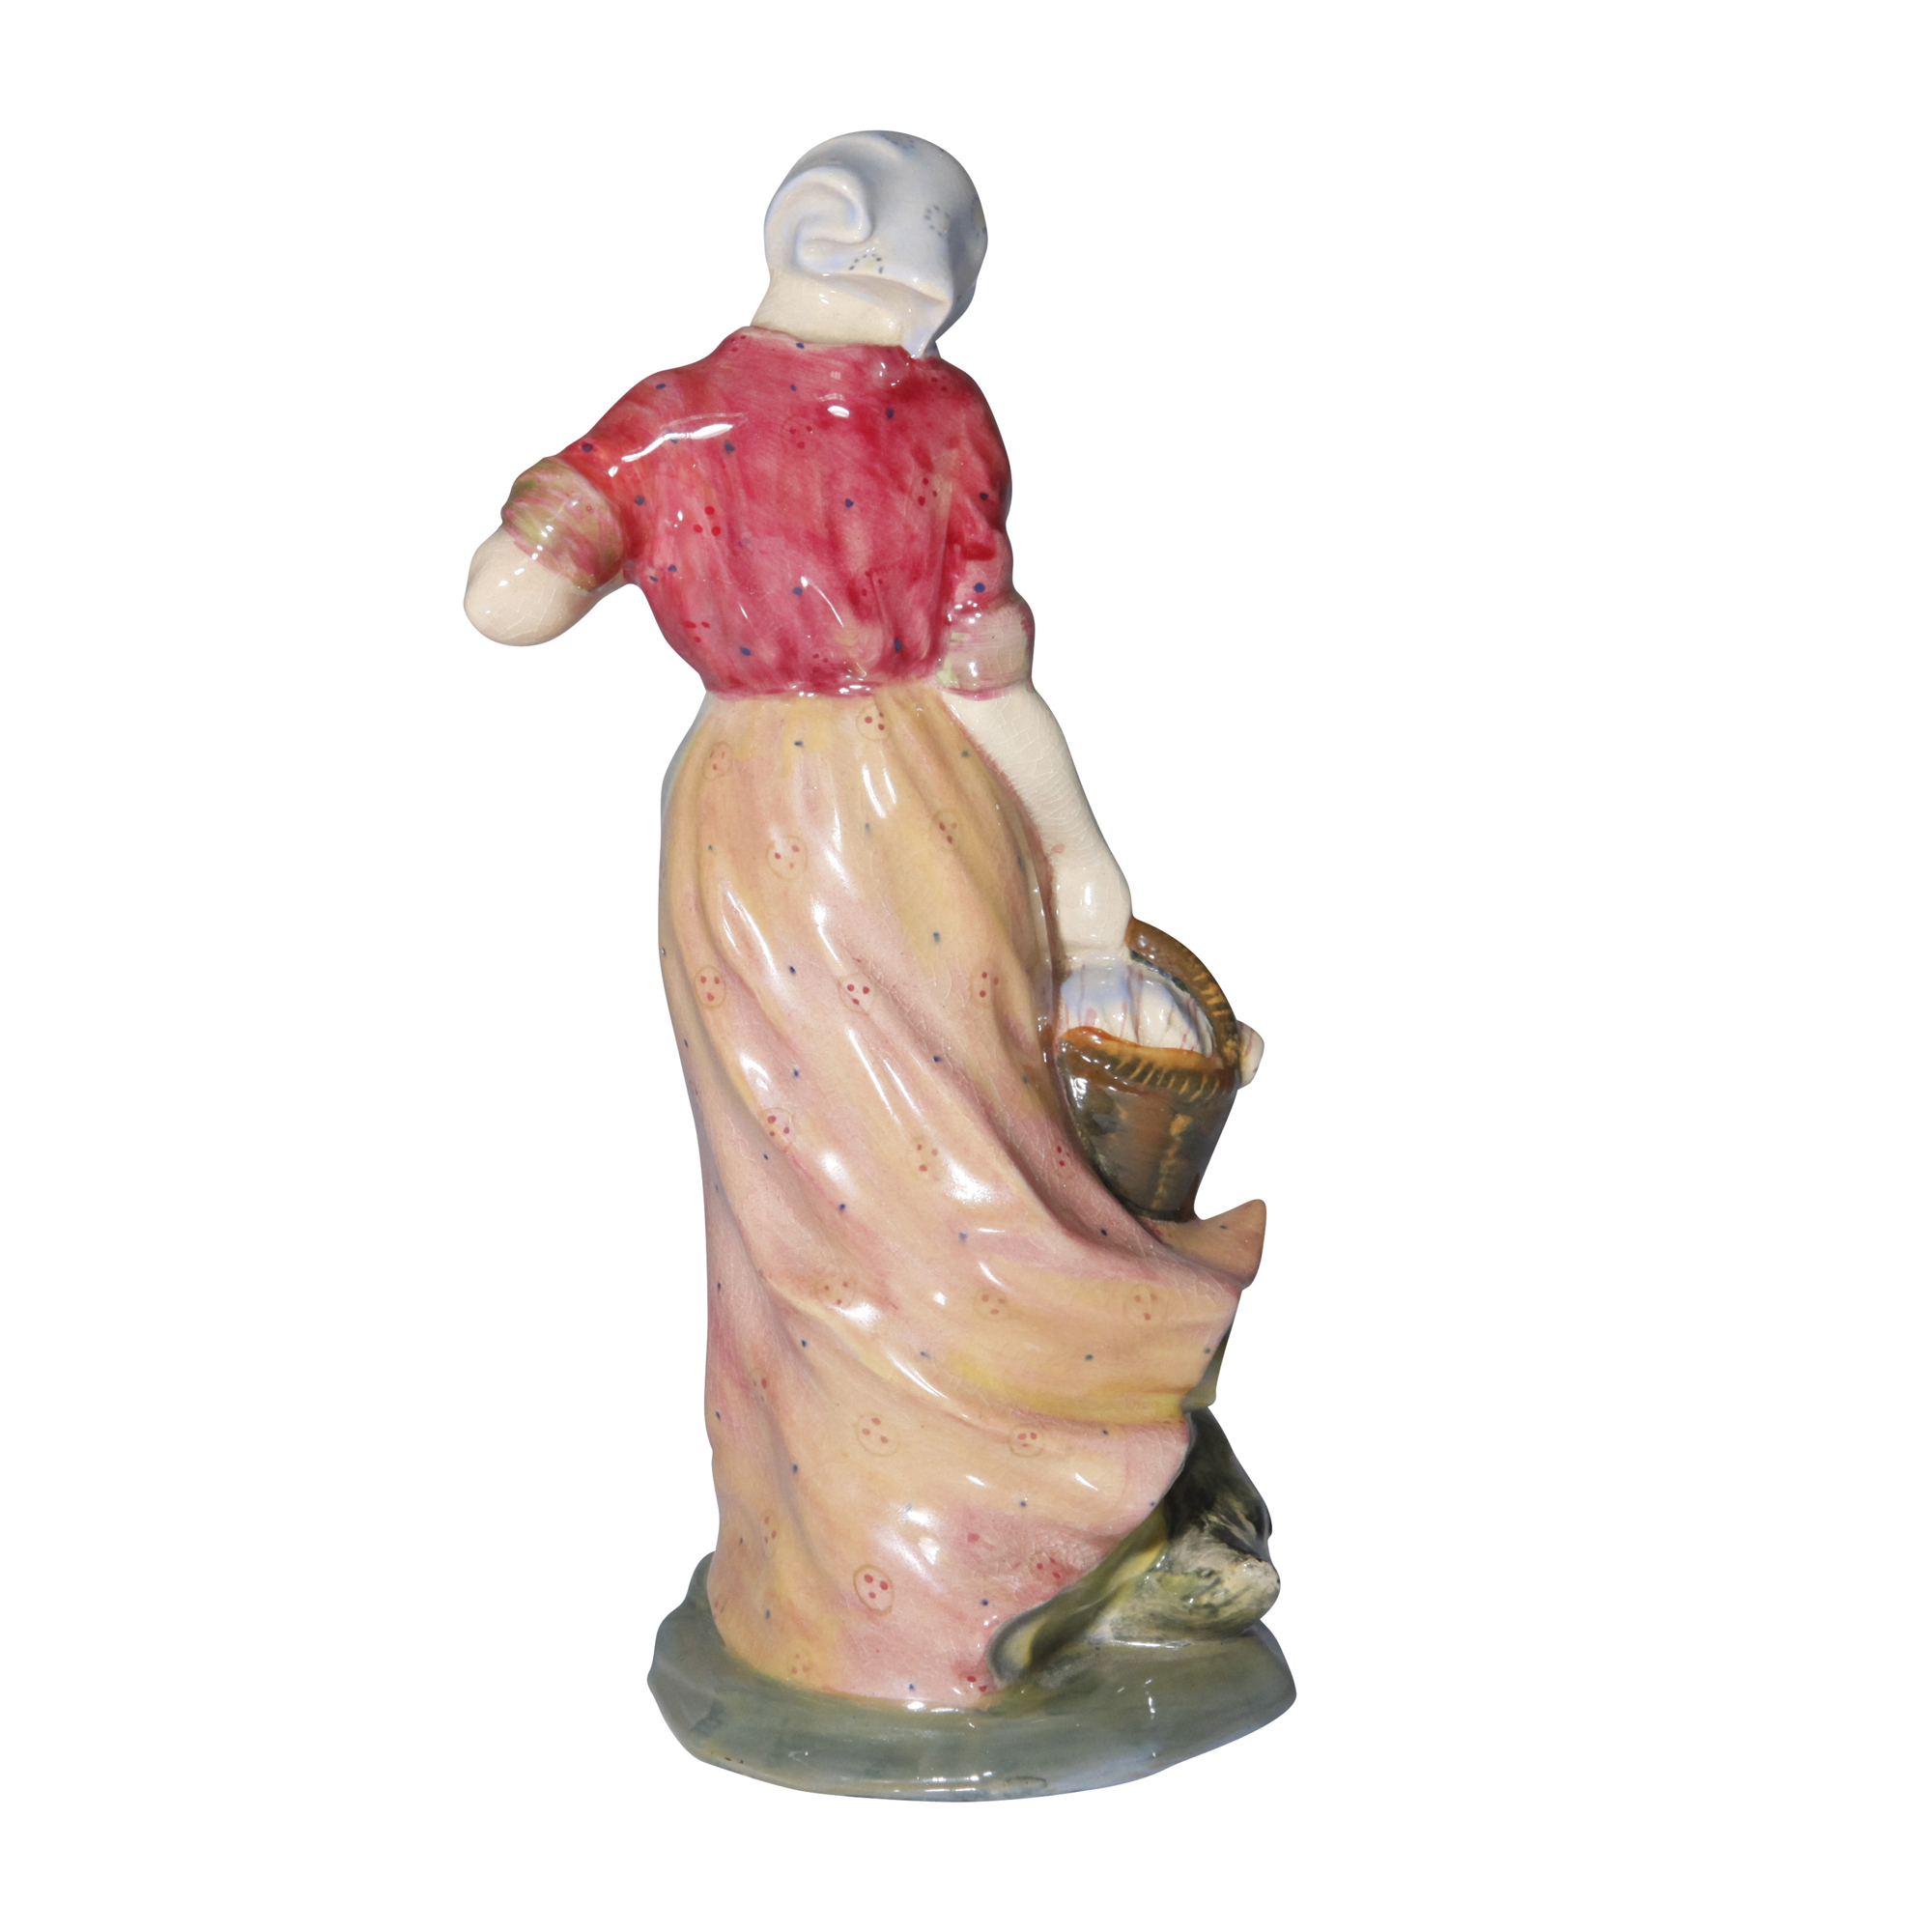 Goosegirl HN559 Royal Doulton Figurine